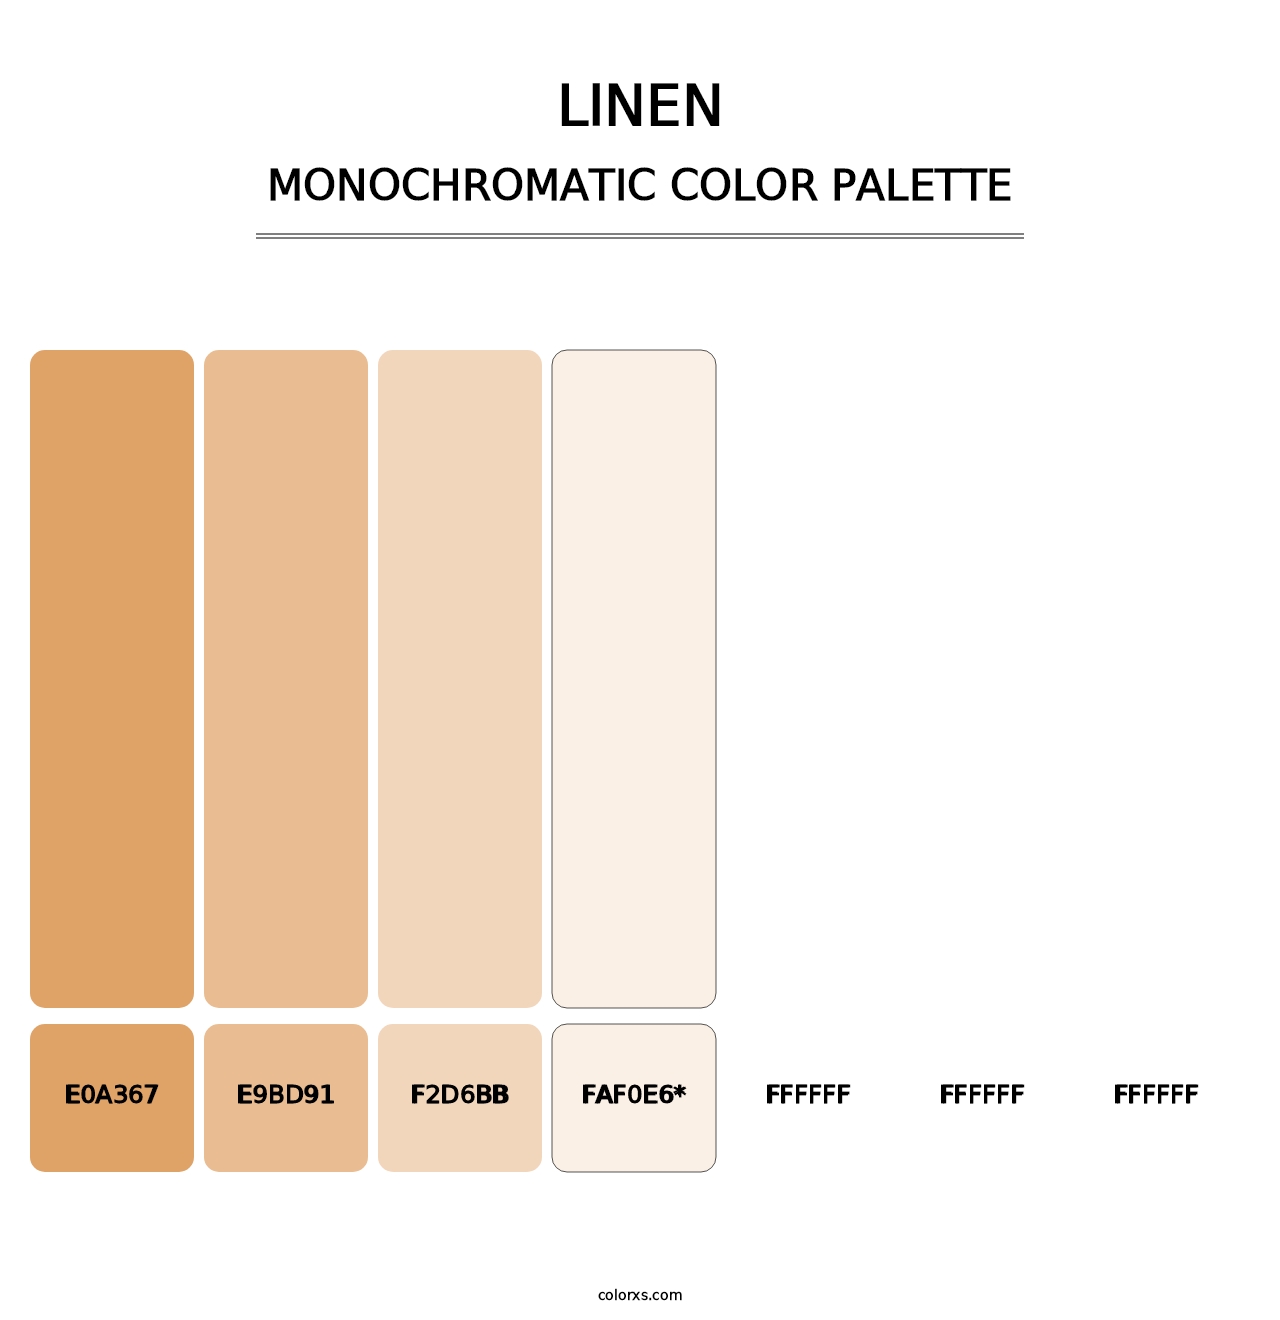 Linen - Monochromatic Color Palette